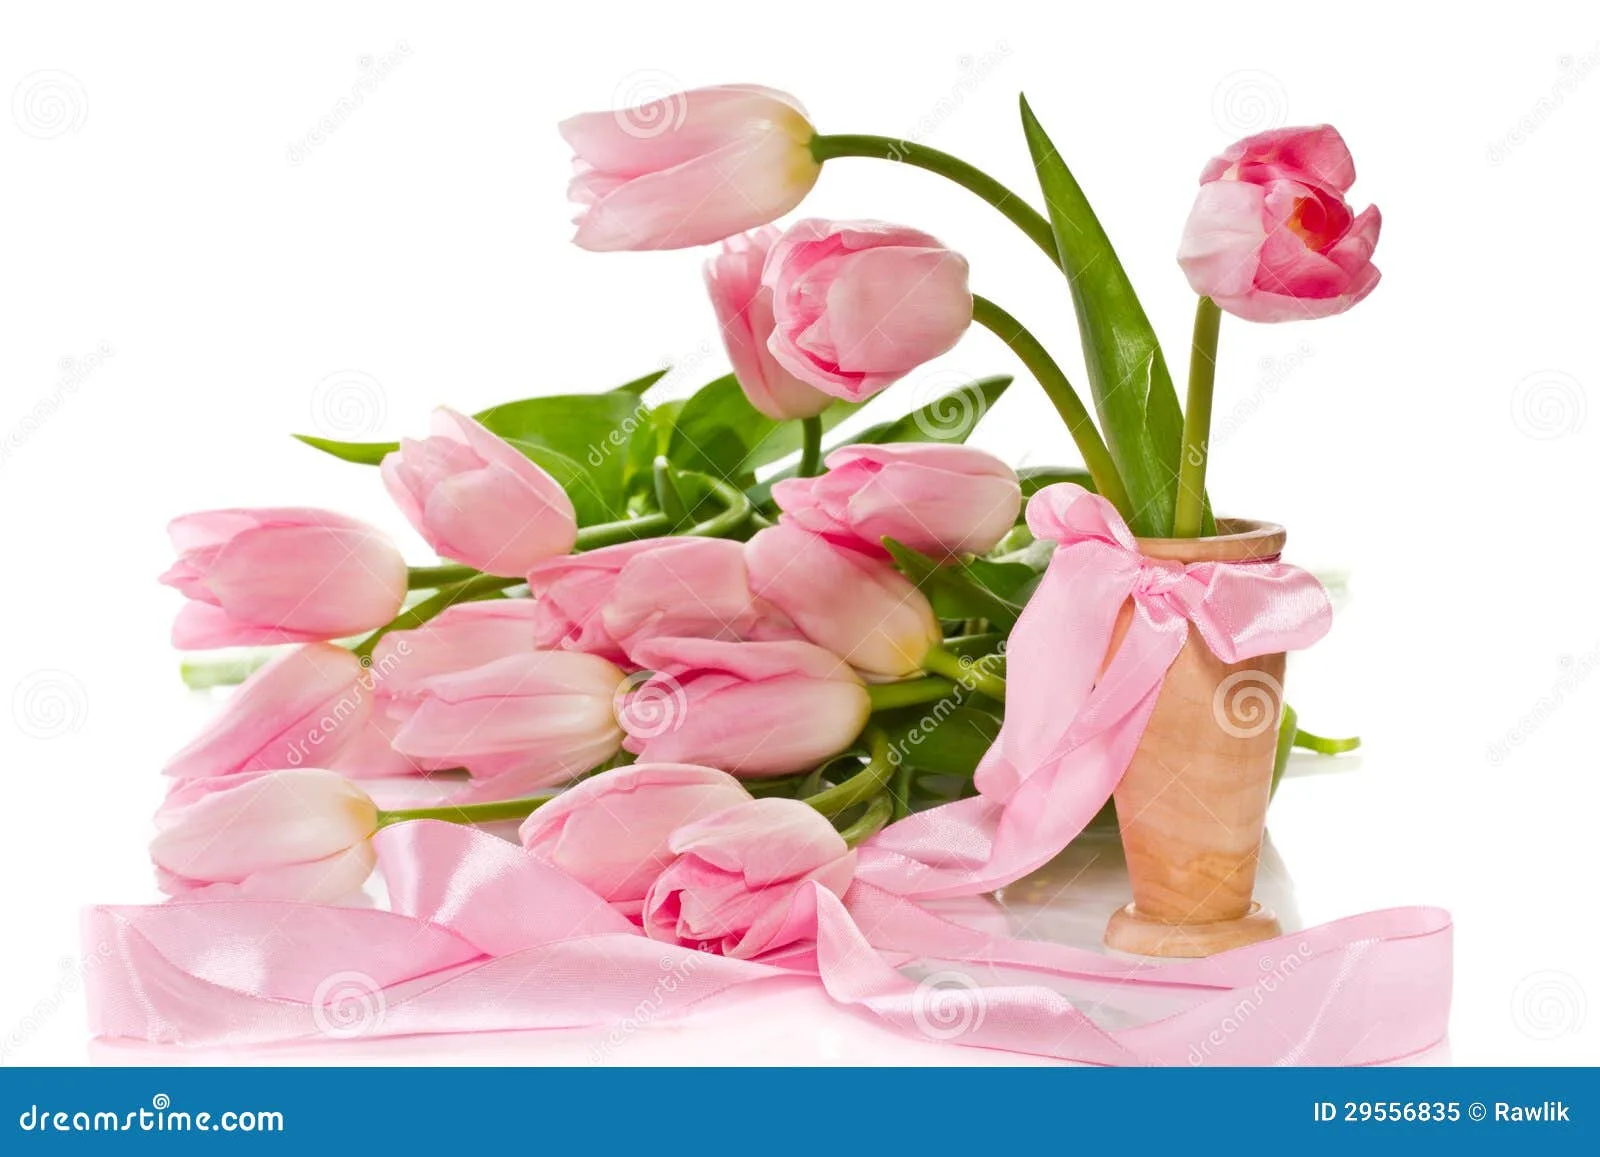 Фото Стихи к подарку тюльпаны #30